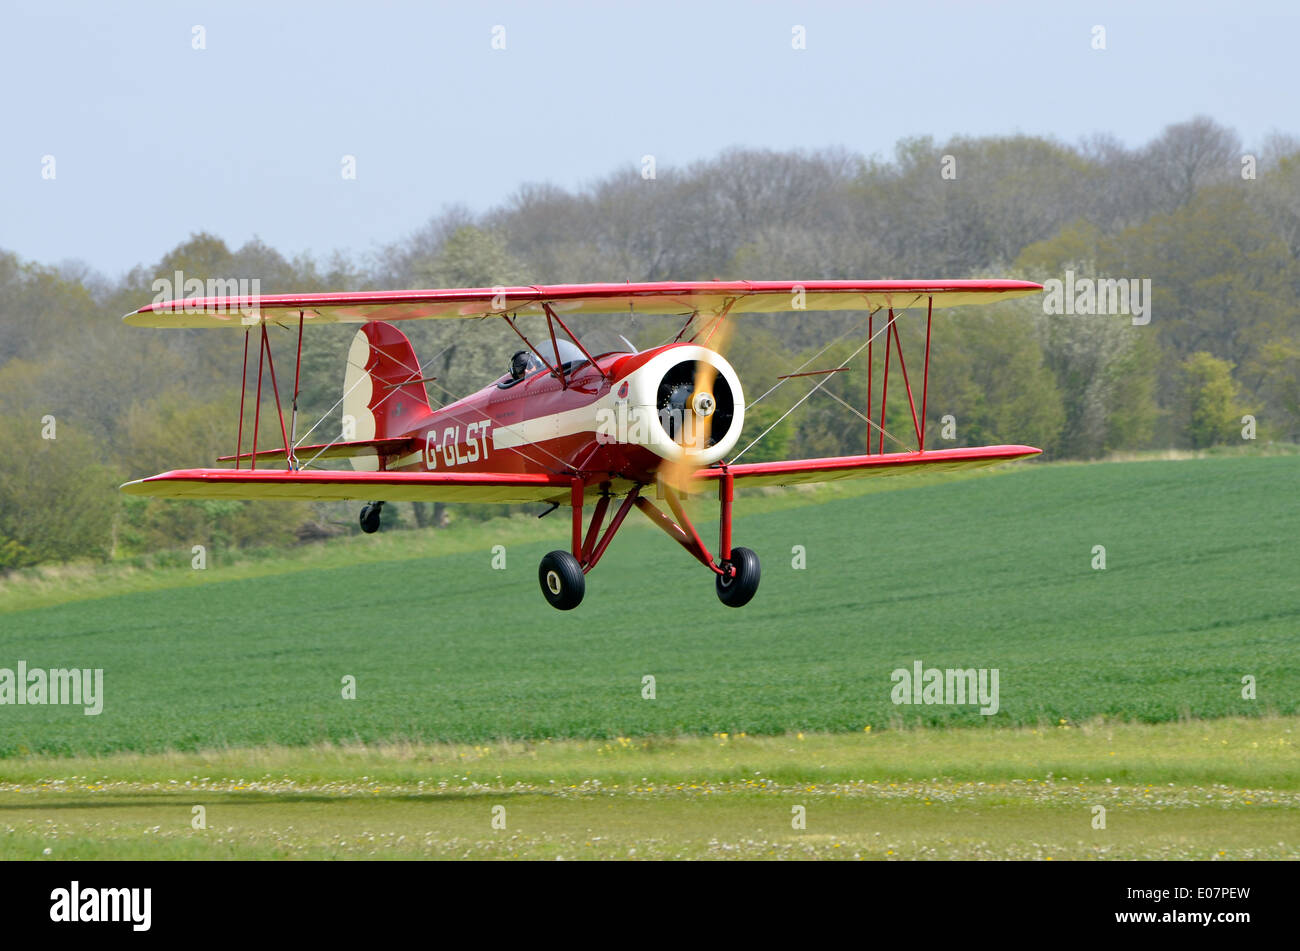 Grands Lacs réplique entraîneur sportif biplan, G-GLST décollant de la piste en herbe à l'Aérodrome de Popham, Hampshire Banque D'Images